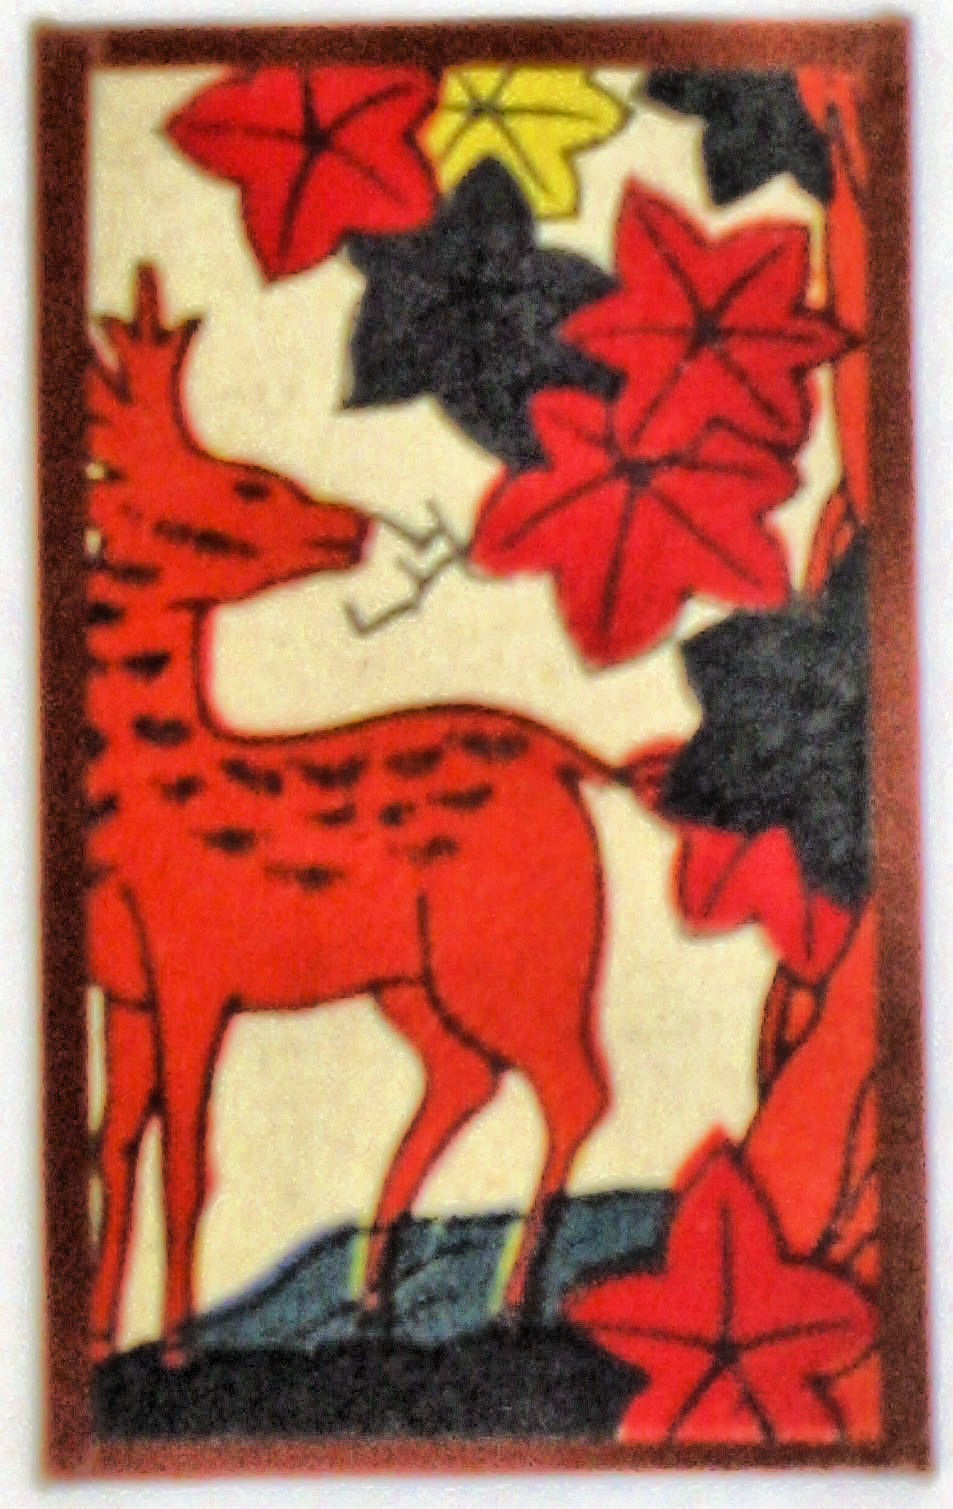 Handafunda deer card